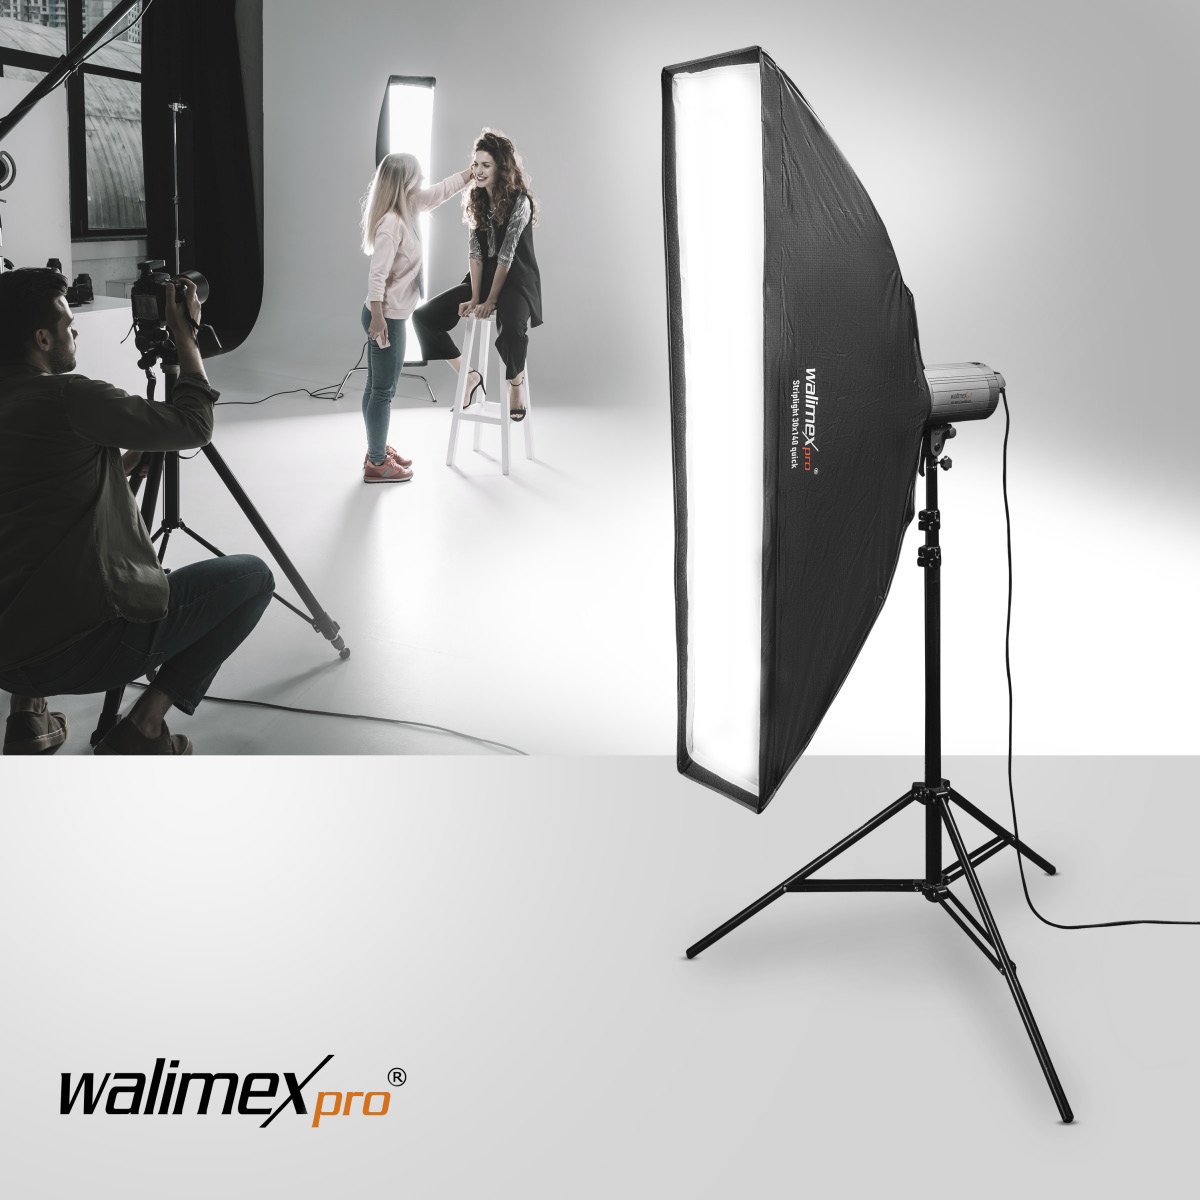 Walimex pro SL Striplight SB QA 30 x 140cm Walimex Pro & K